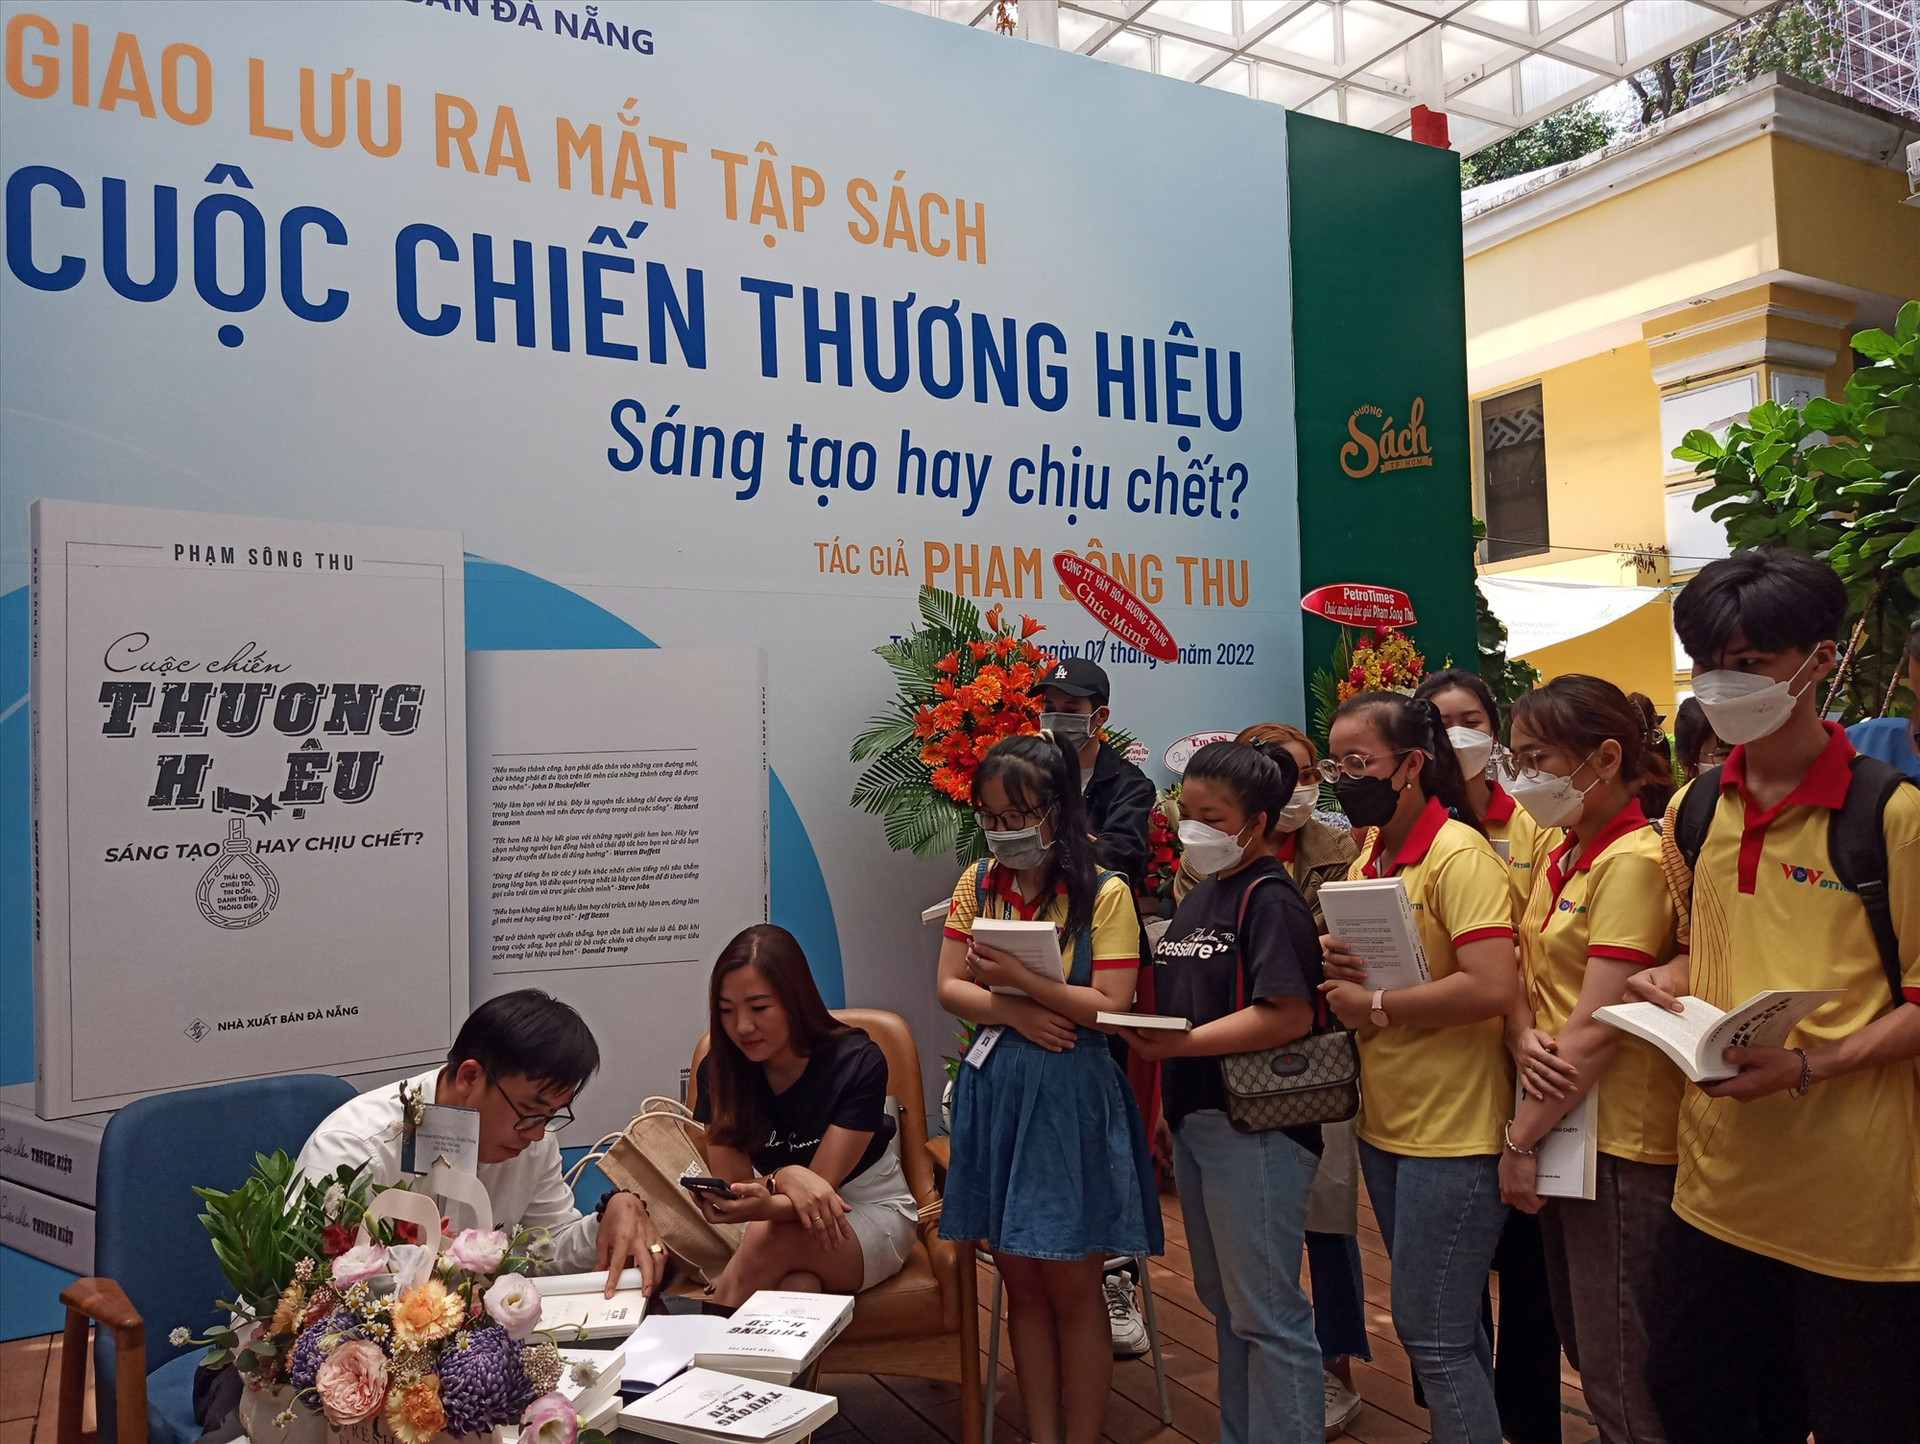 Tác giả Phạm Sông Thu (bìa trái) ký tặng sách cho độc giả tại buổi giao lưu do NXB Đà Nẵng tổ chức ở Đường Sách TP Hồ Chí Minh ngày 7.5.2022. Ảnh: ANH QUÂN